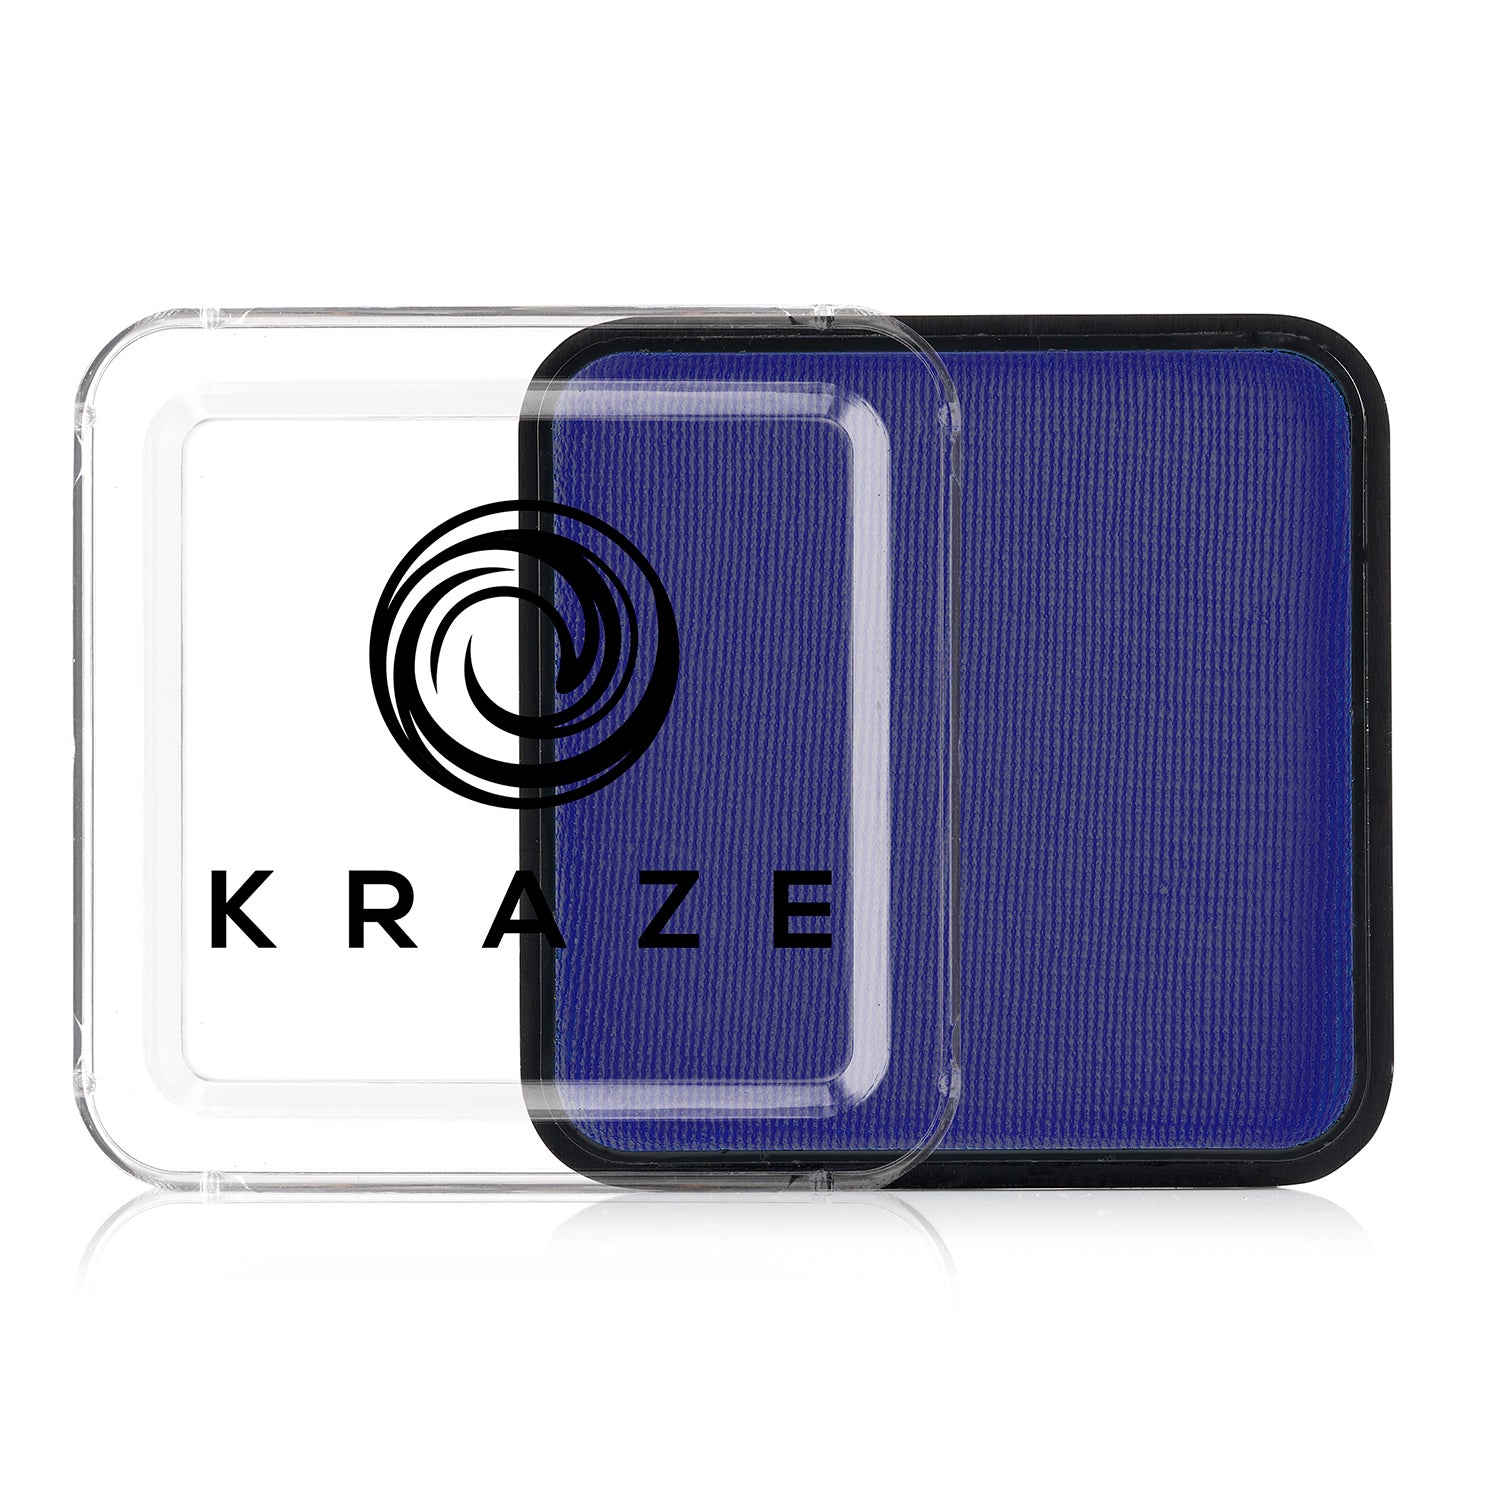 Kraze FX Face Paint - Royal Blue (25 gm)